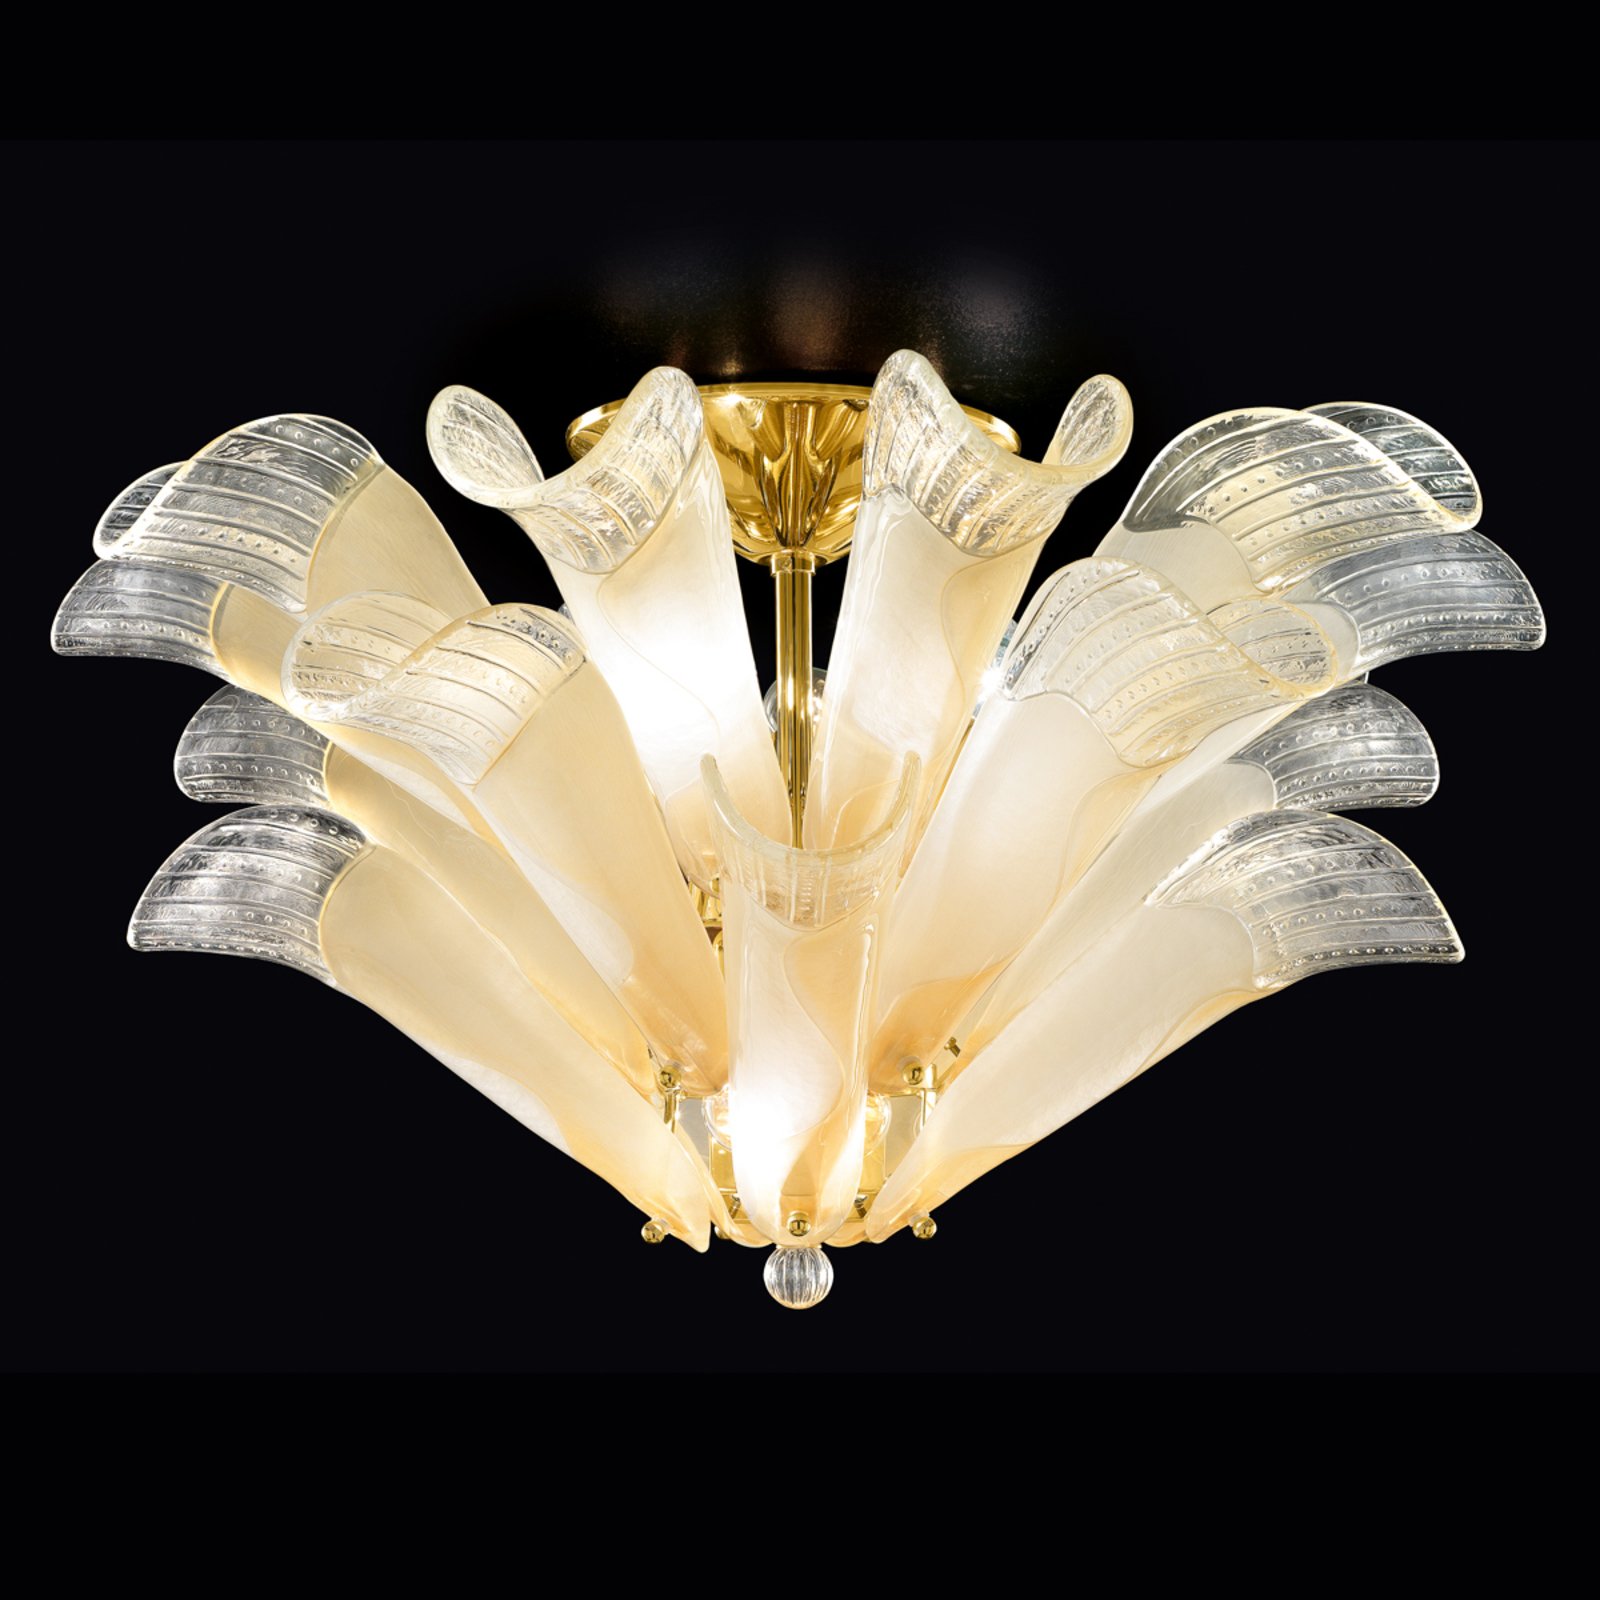 Petali taklampe med Muranoglass gull-rav